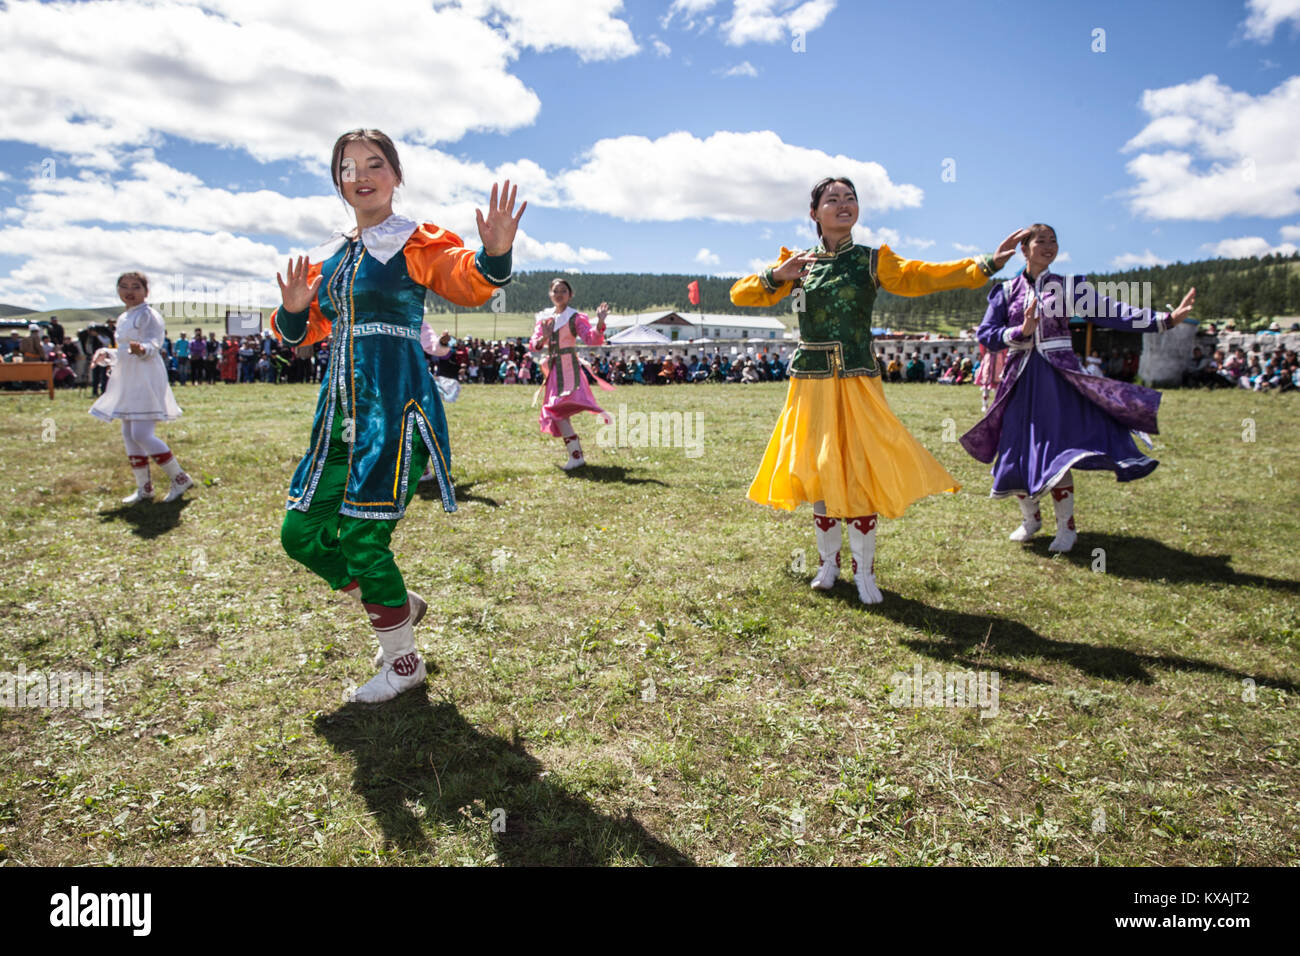 Dance performers dancing at Naadam Festival, Bulgan, Mongolia Stock Photo